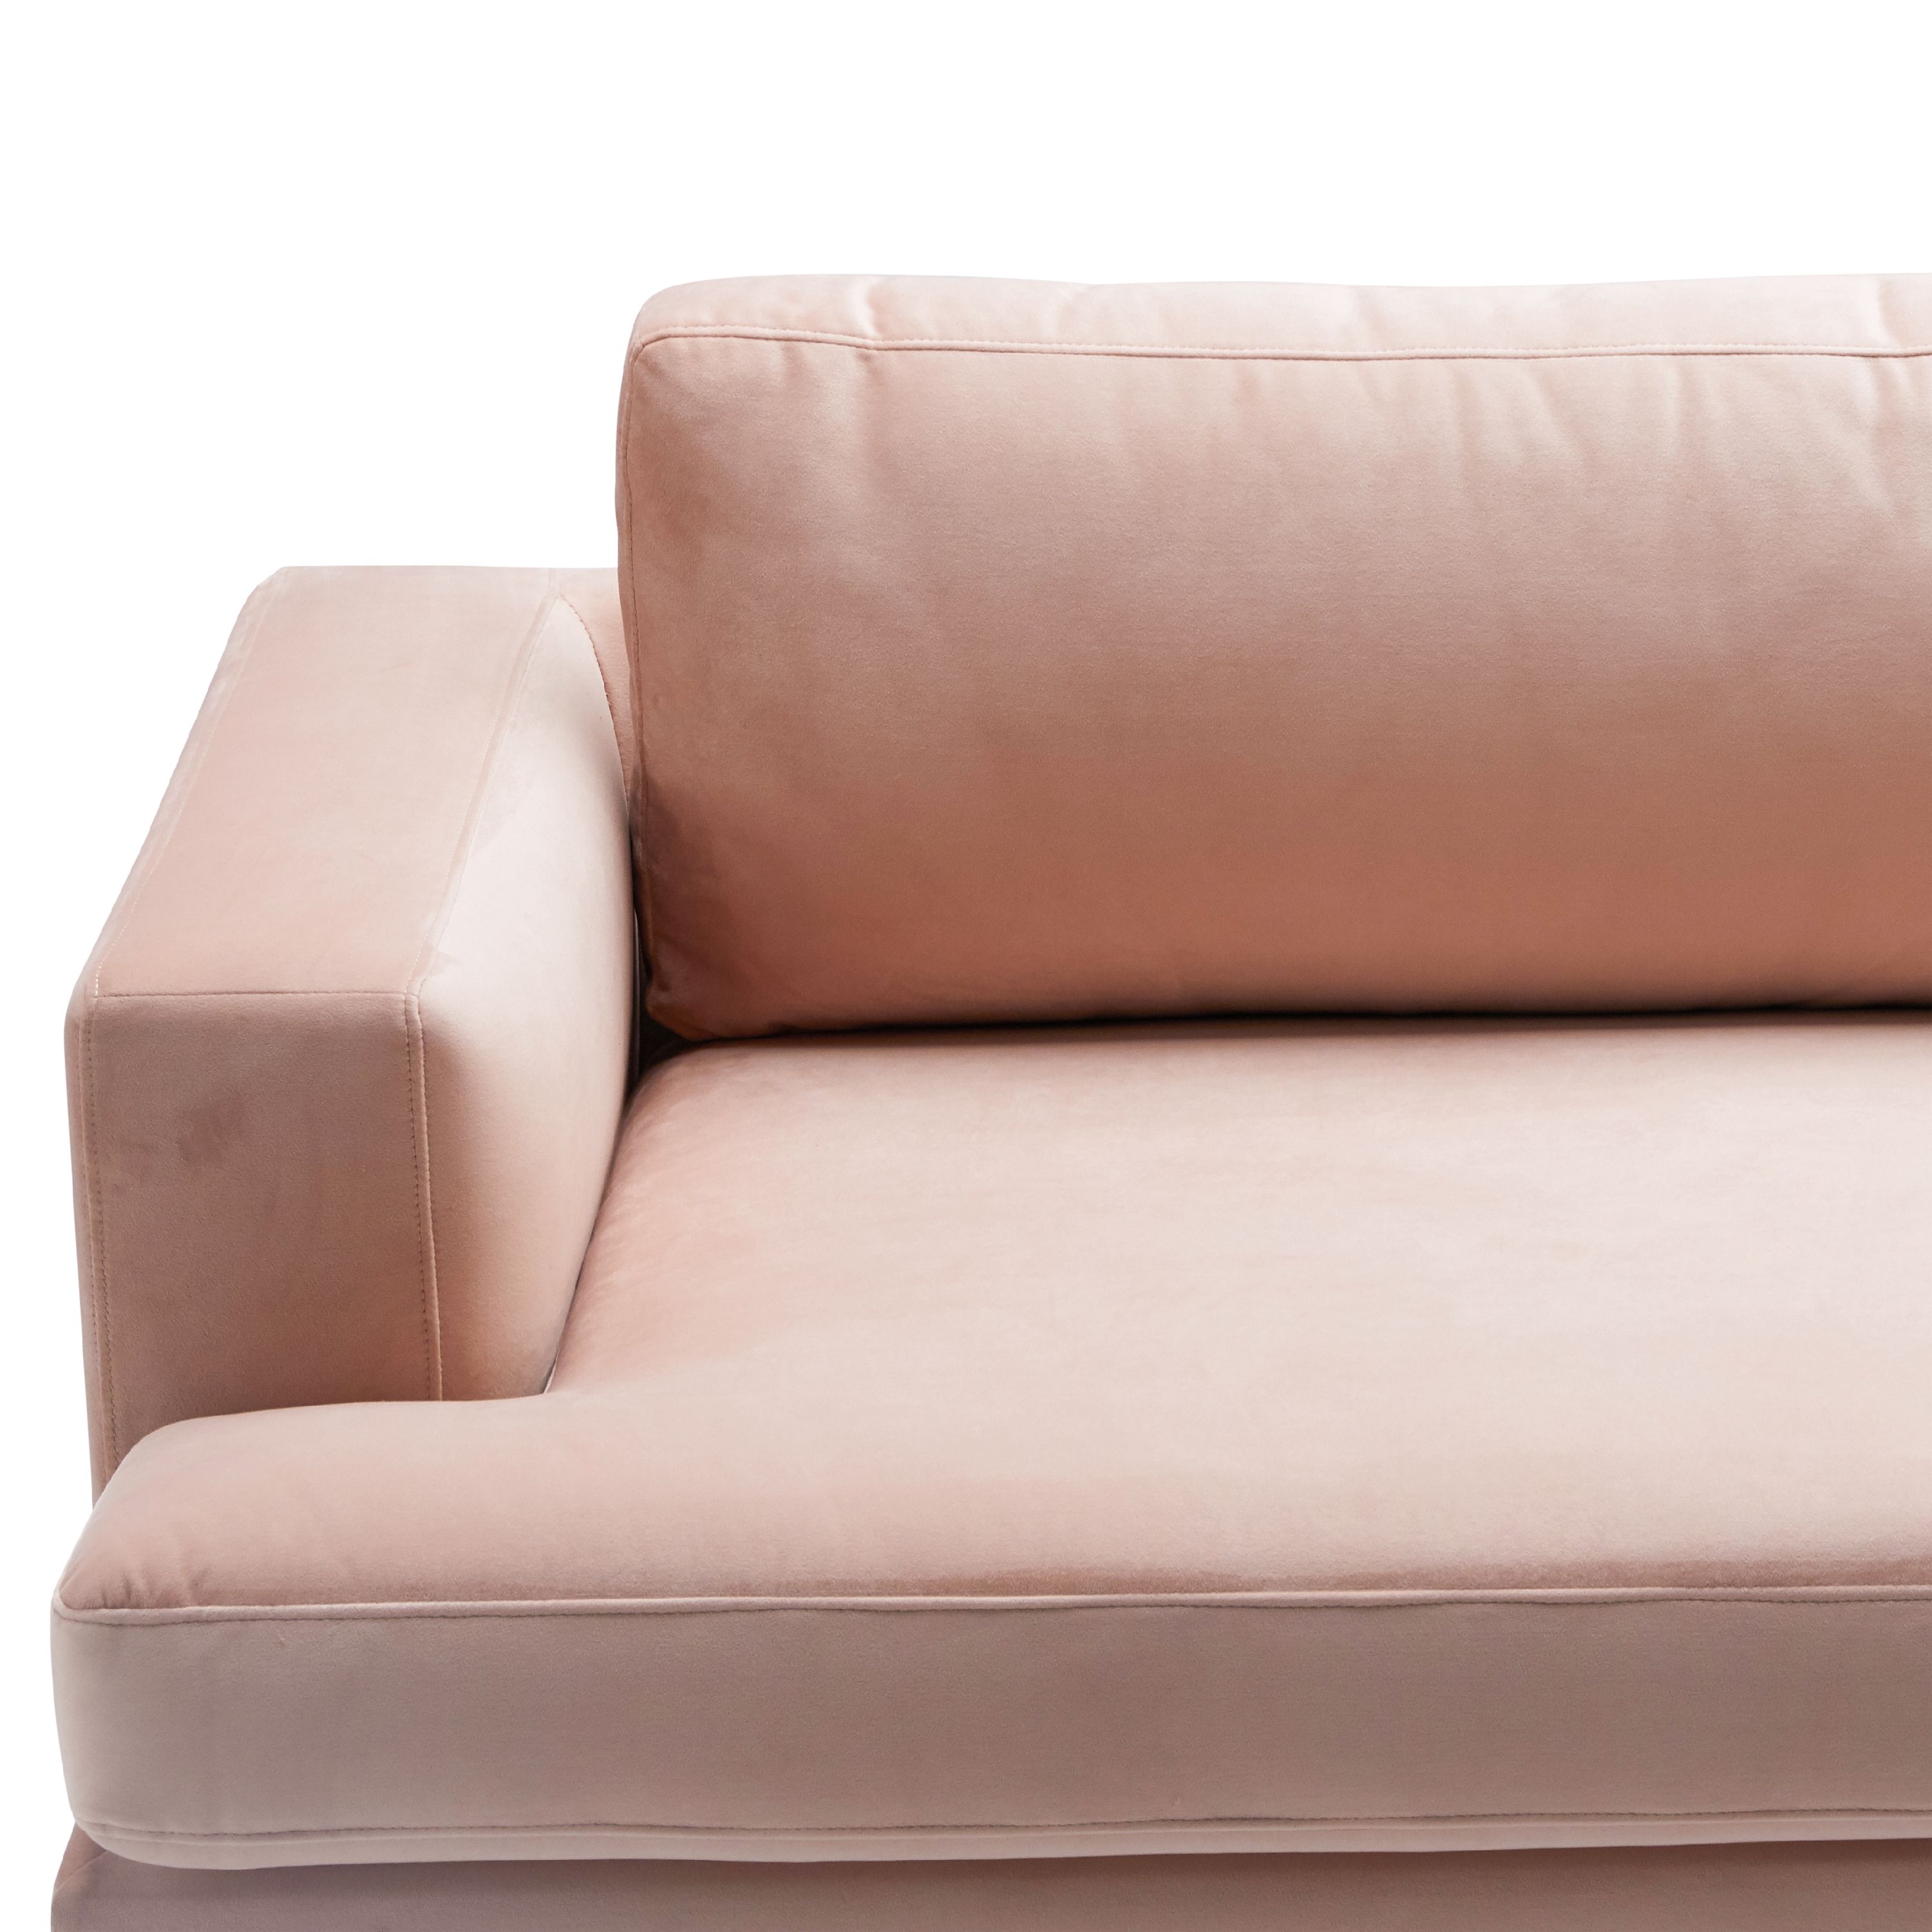 Drew Barrymore Flower Home Sofa, Pink Velvet - image 4 of 17